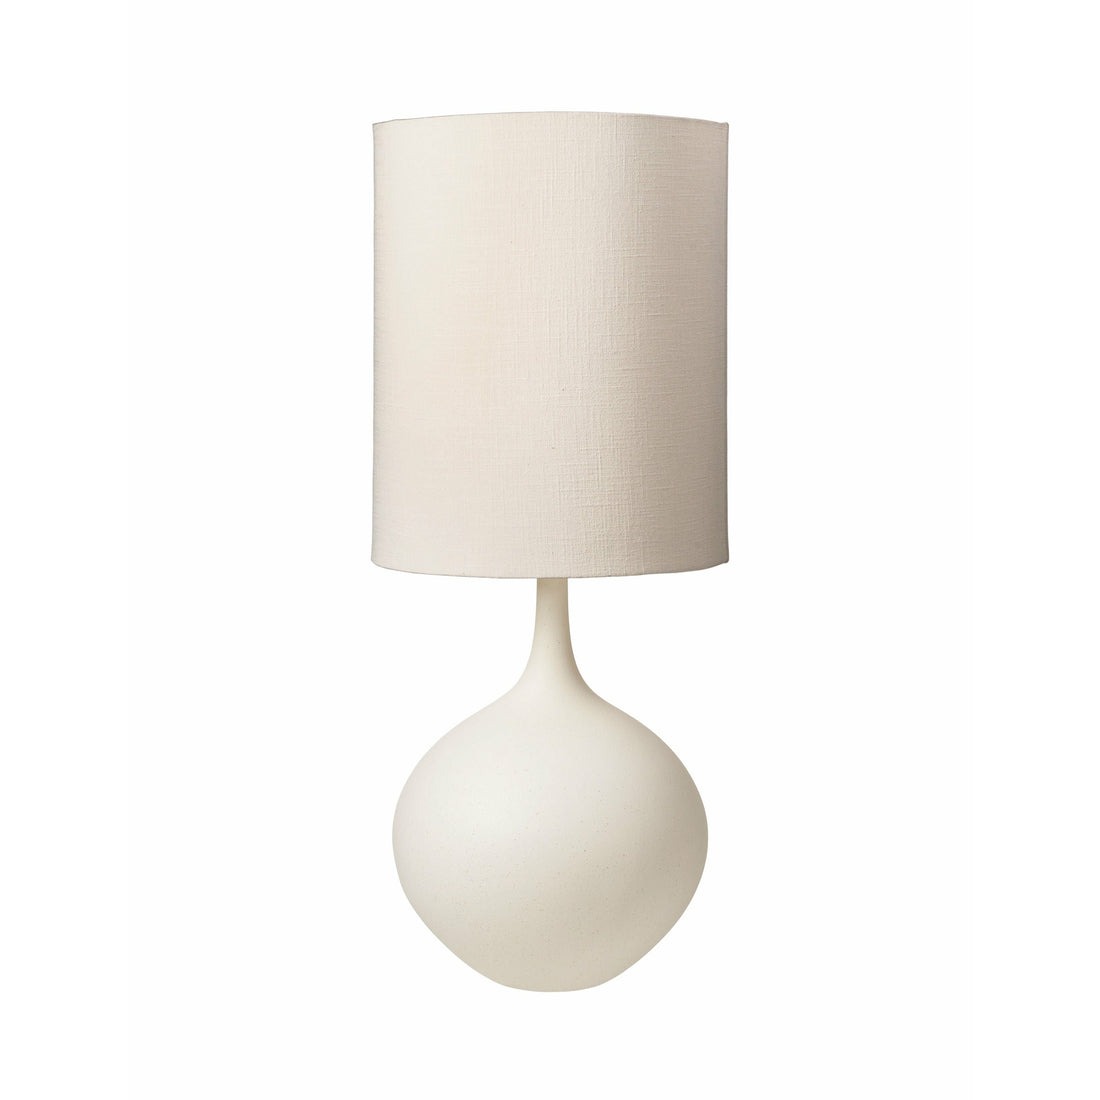 Cozy Living Bella Keramiklampe mit Schirm - MILK*